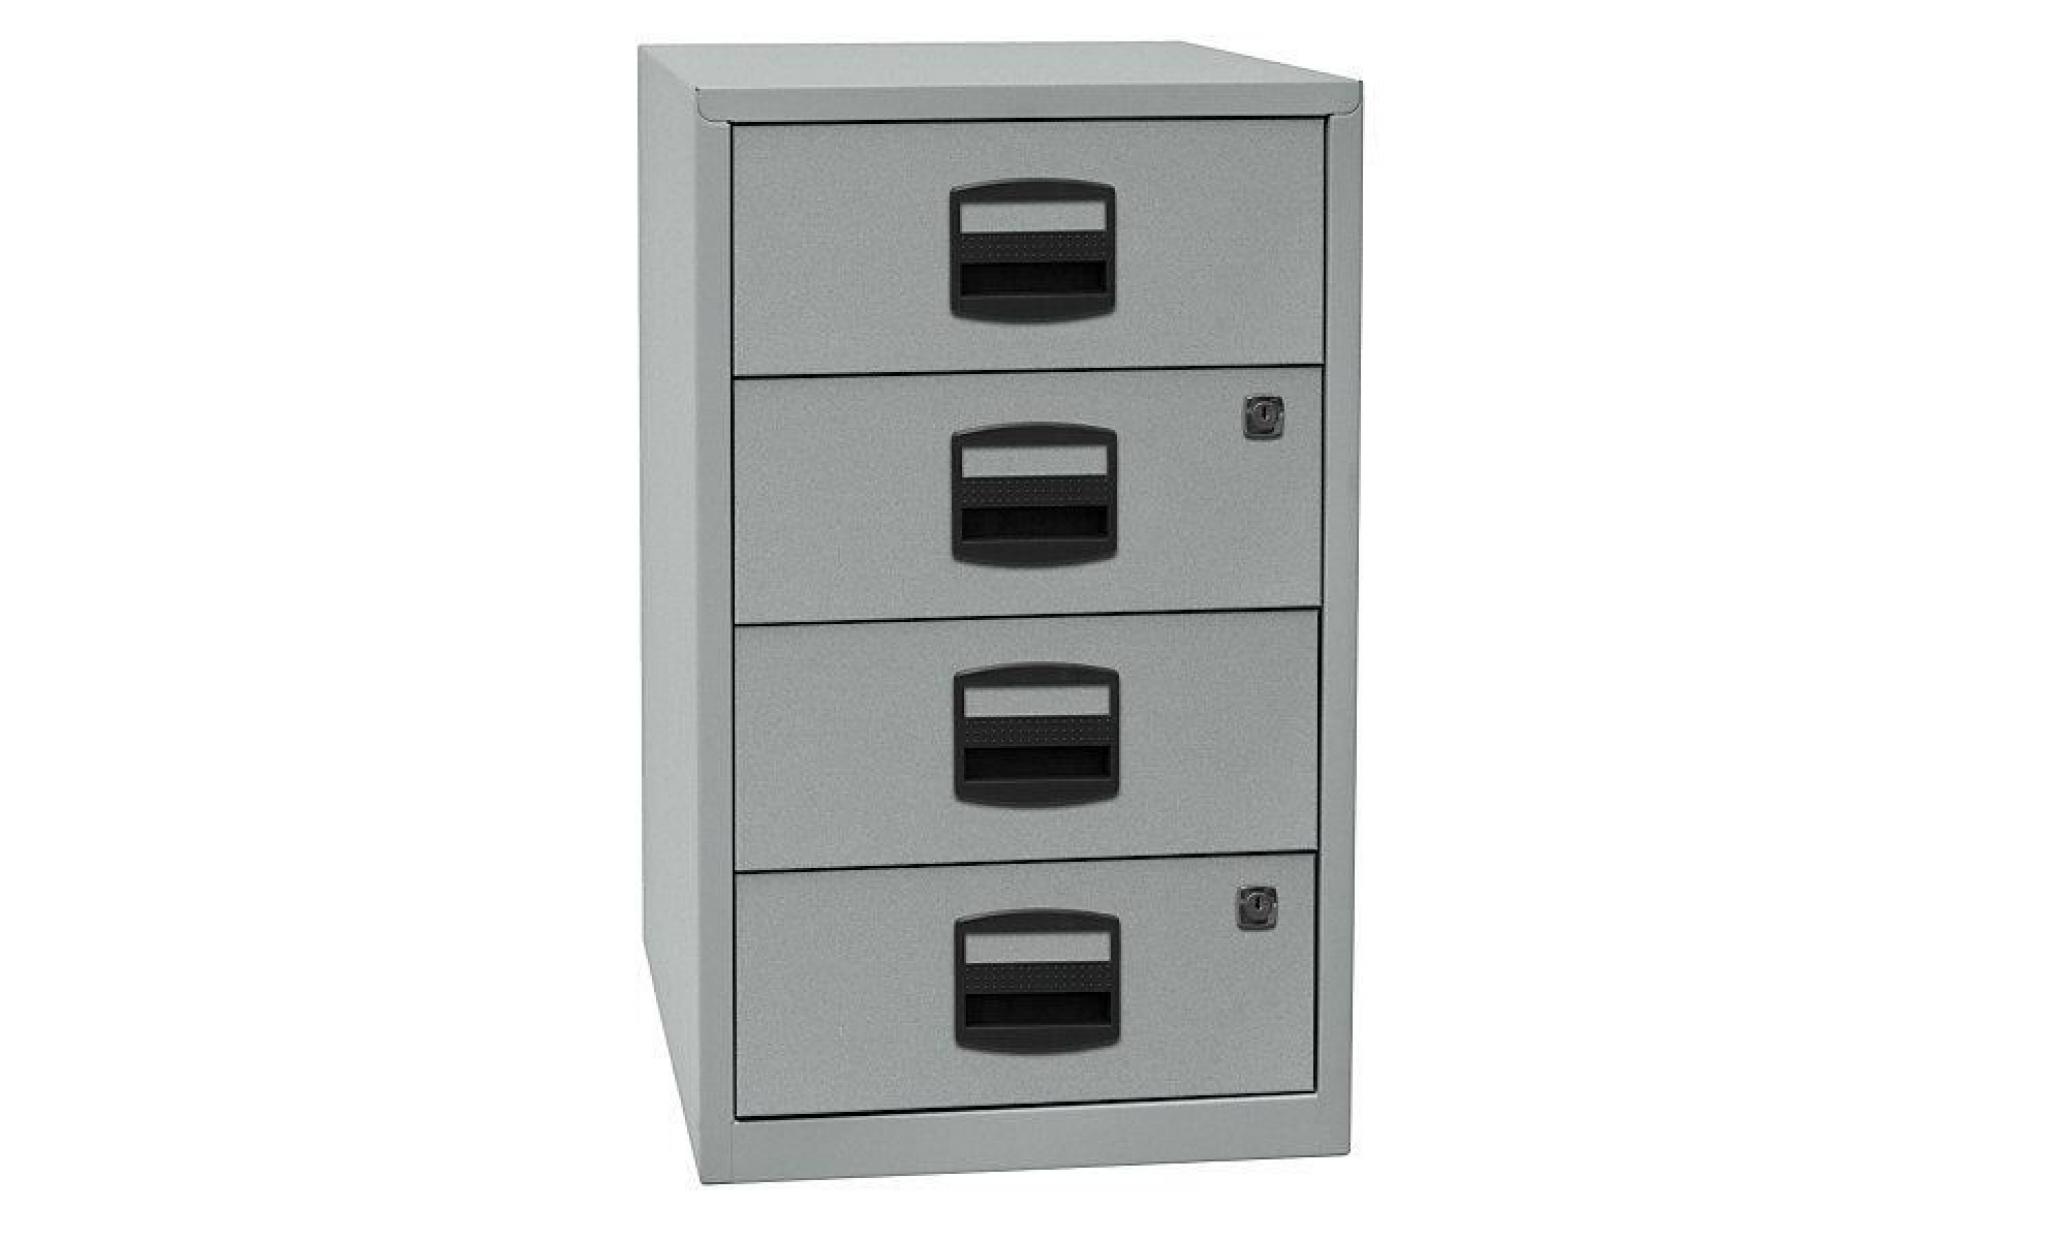 armoire hauteur bureau pfa   4 tiroirs universels gris clair / rouge cardinal   armoire basse armoire de bureau armoire à tiroirs